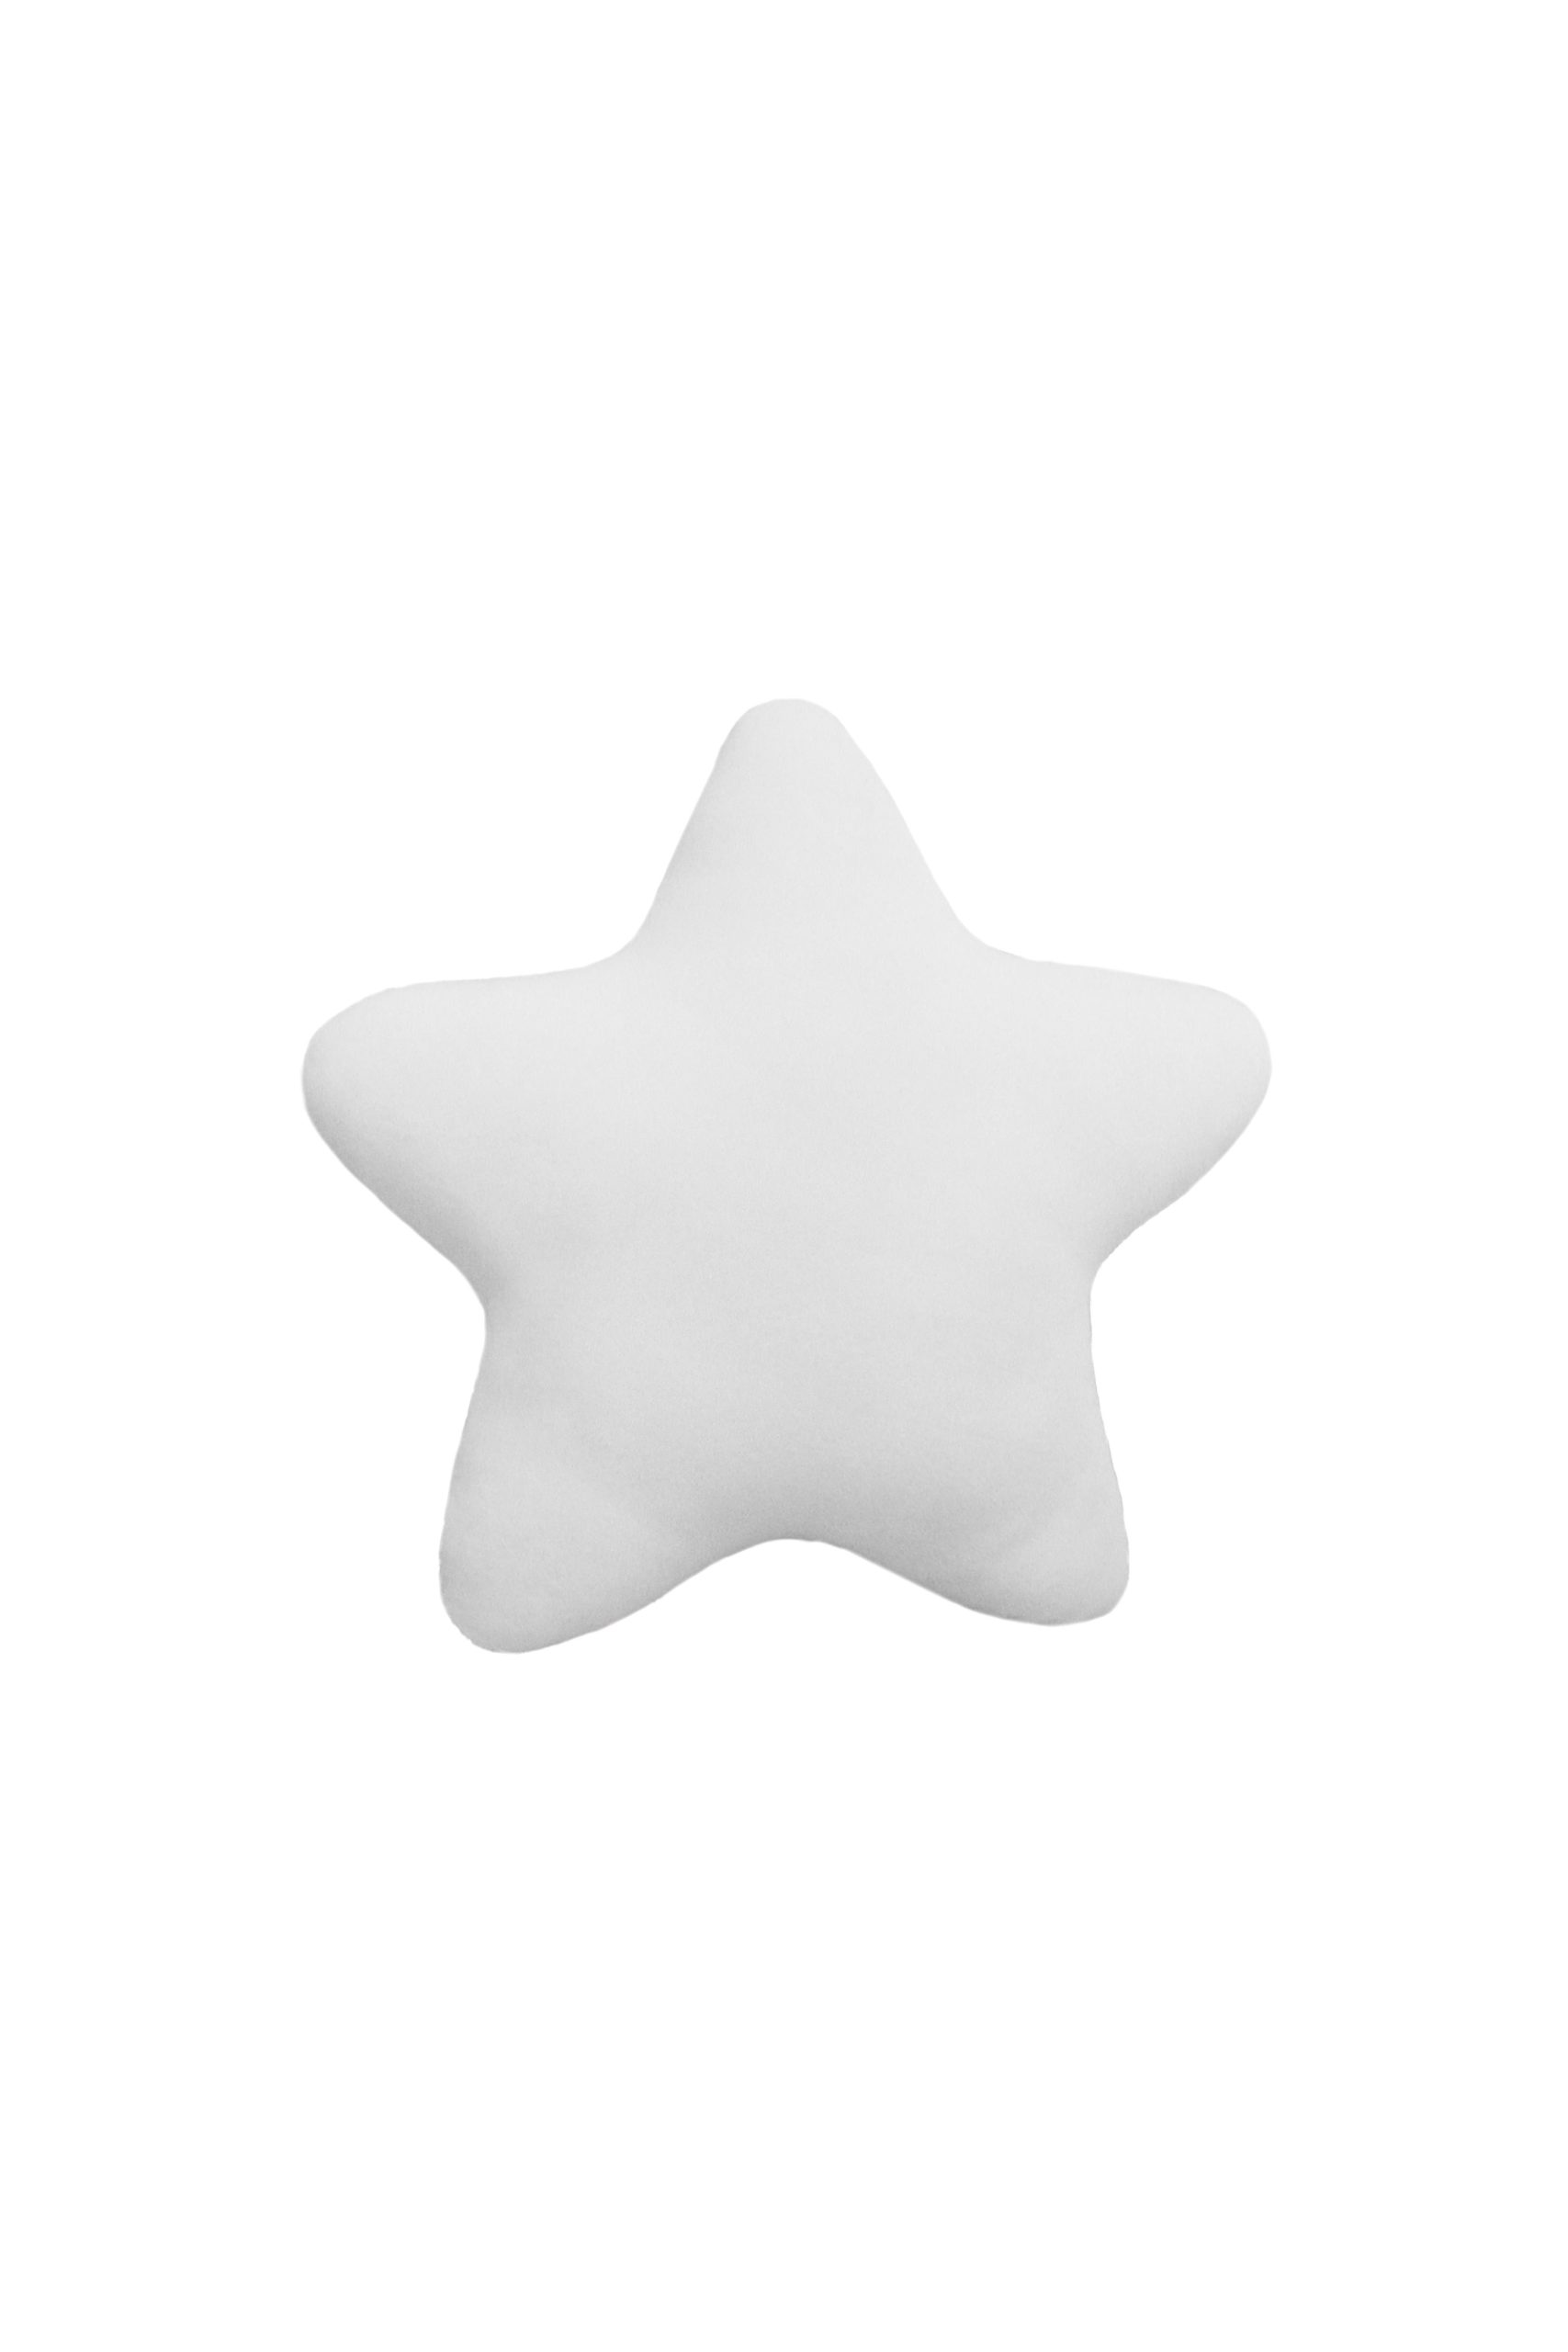 Μαξιλαράκι Διακοσμητικό Star Ivory 30×30